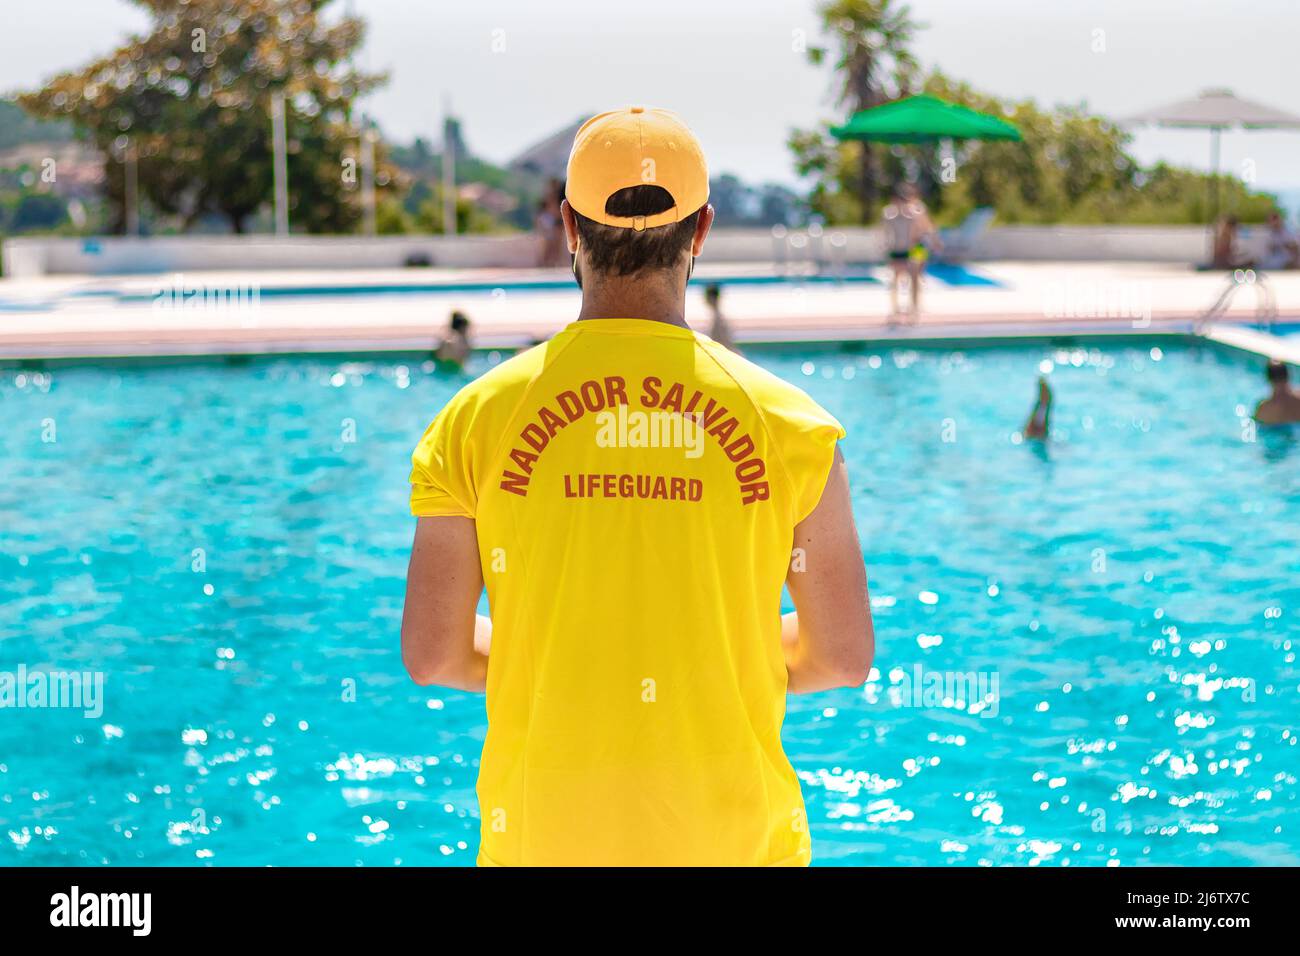 Nadador Salvador Lifeguard Pool Piscina Portugal Portuguese Yellow Amarelo Blue Azul Piscina Homem Man Arms Back Braços No Face Sem Cara Verão Calor Stock Photo